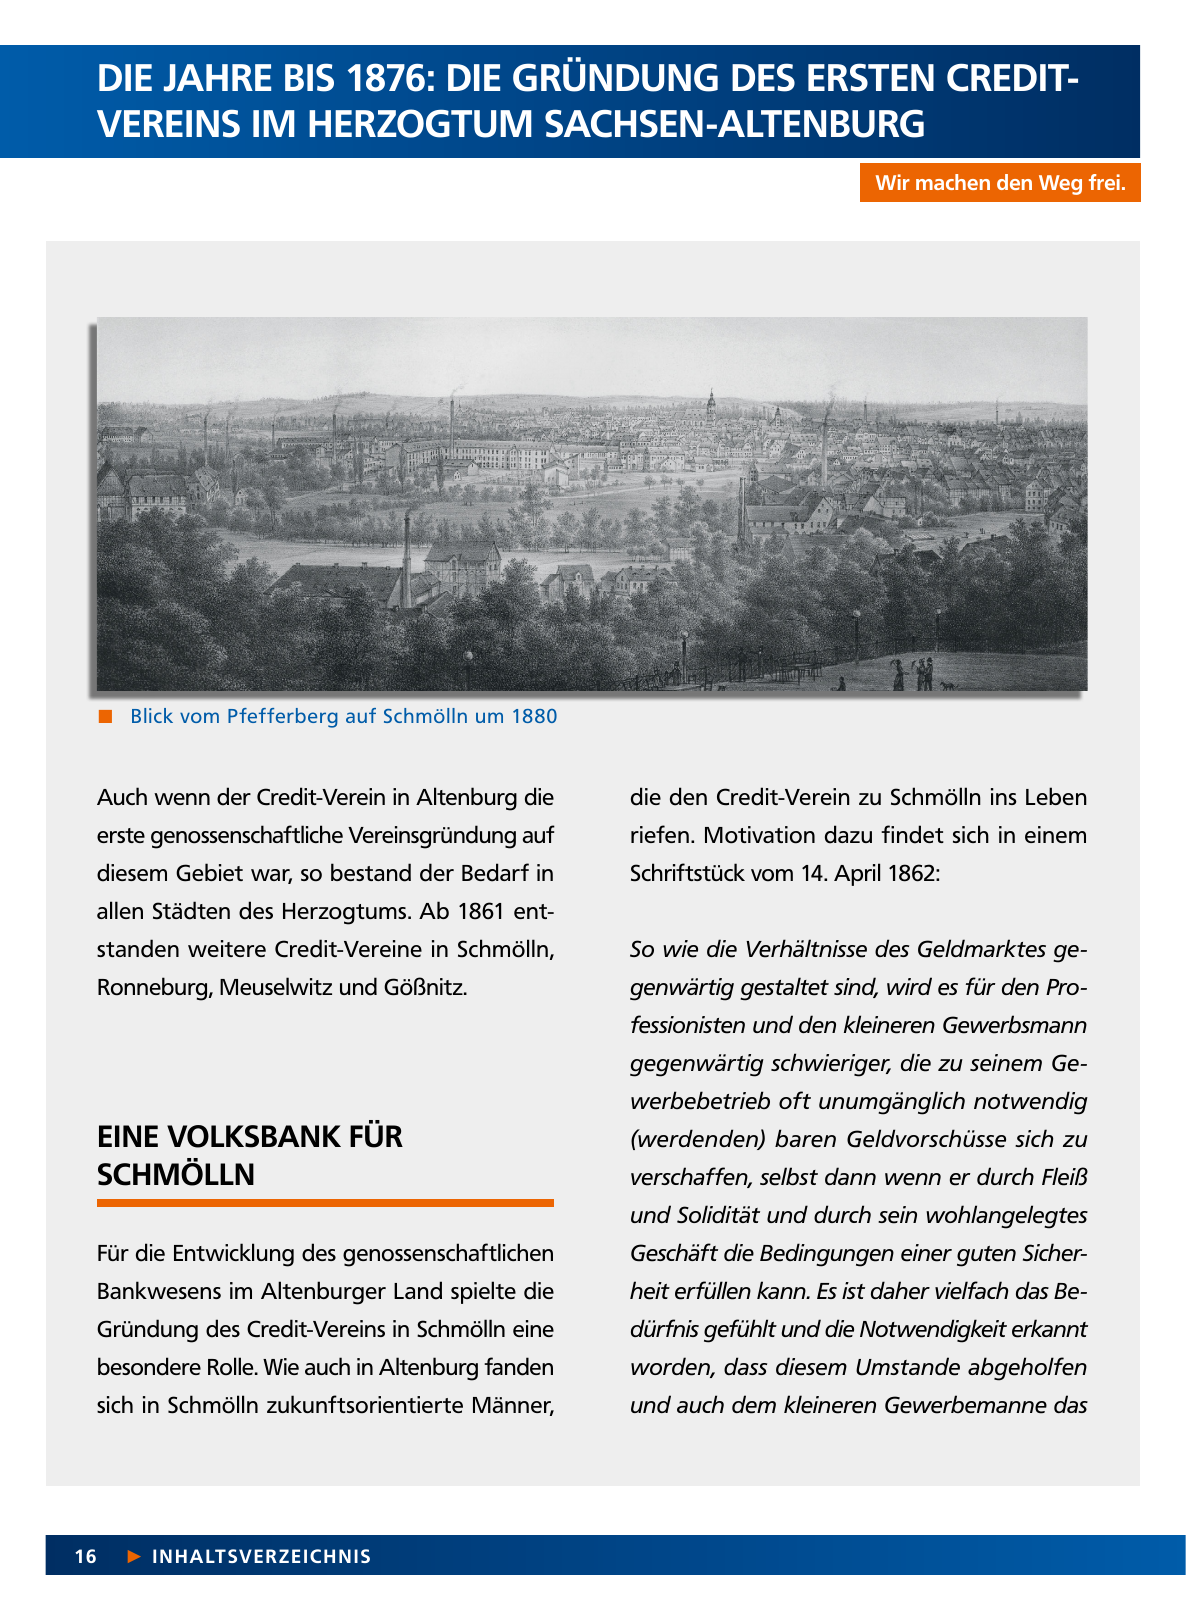 Vorschau Von der Idee, sich selbst zu helfen – 150 Jahre genossenschaftliches Bankwesen im Altenburger Land Seite 16